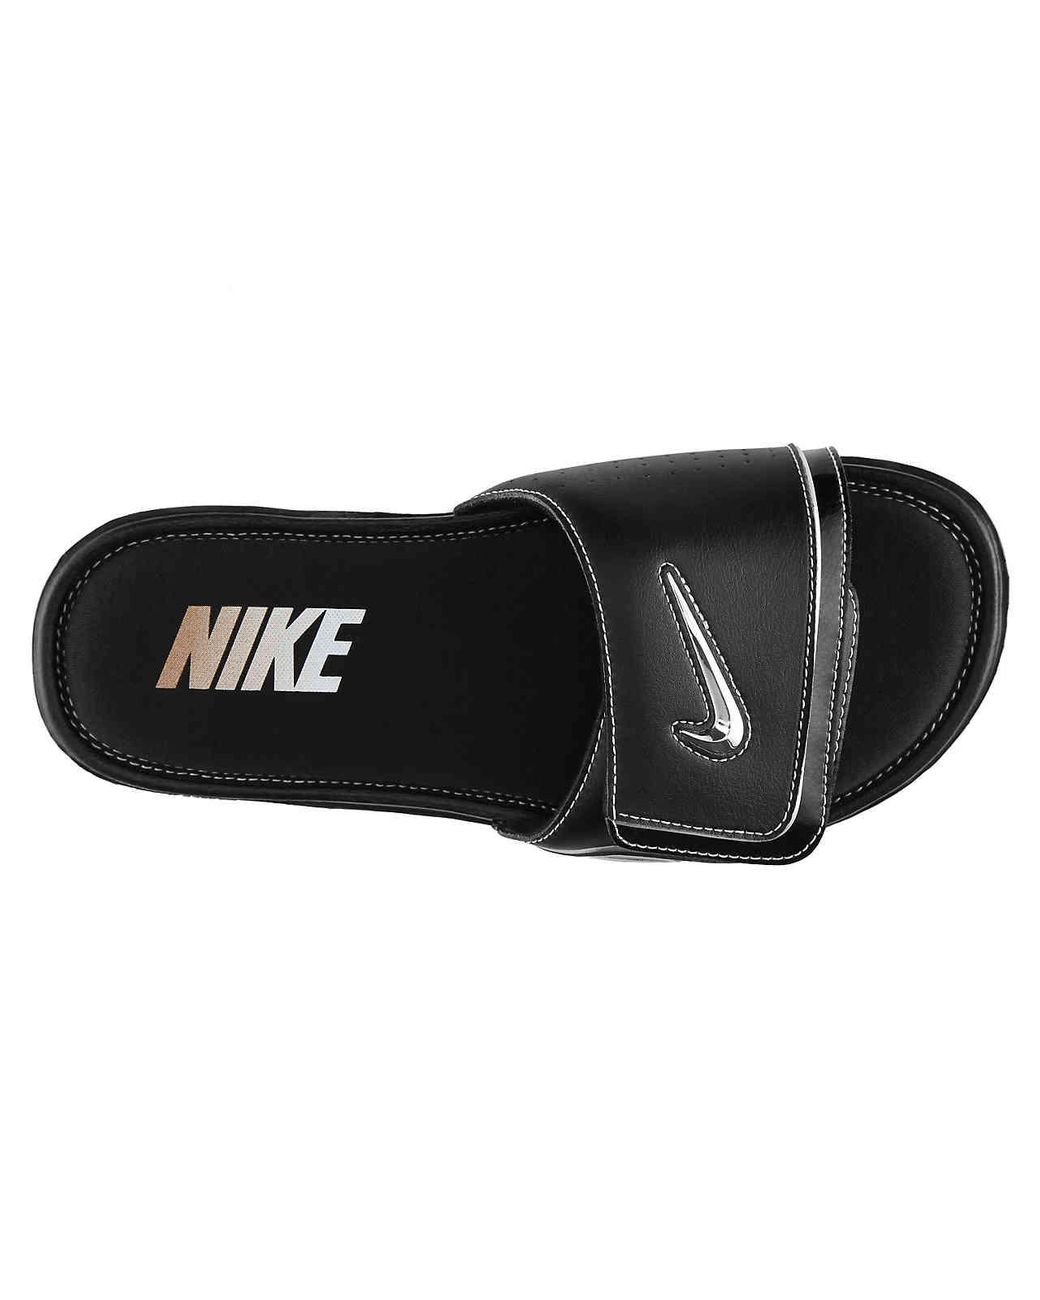 Nike Comfort Slide Sandal In Black For Men Lyst | lupon.gov.ph